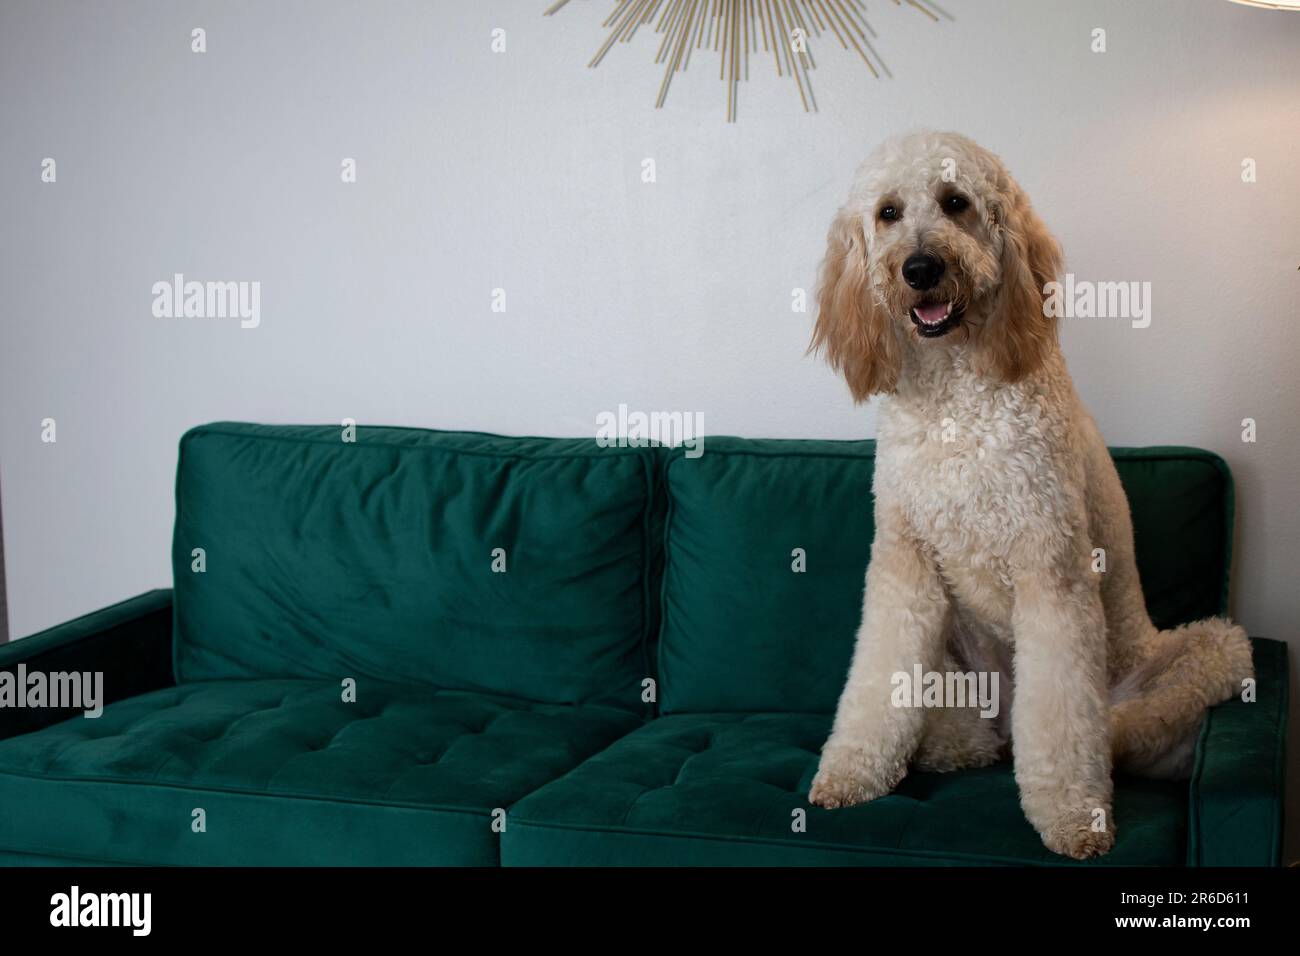 Porträt eines riesigen weißen Hundes Goldendoodle, der auf einer grünen Samtcouch sitzt Stockfoto